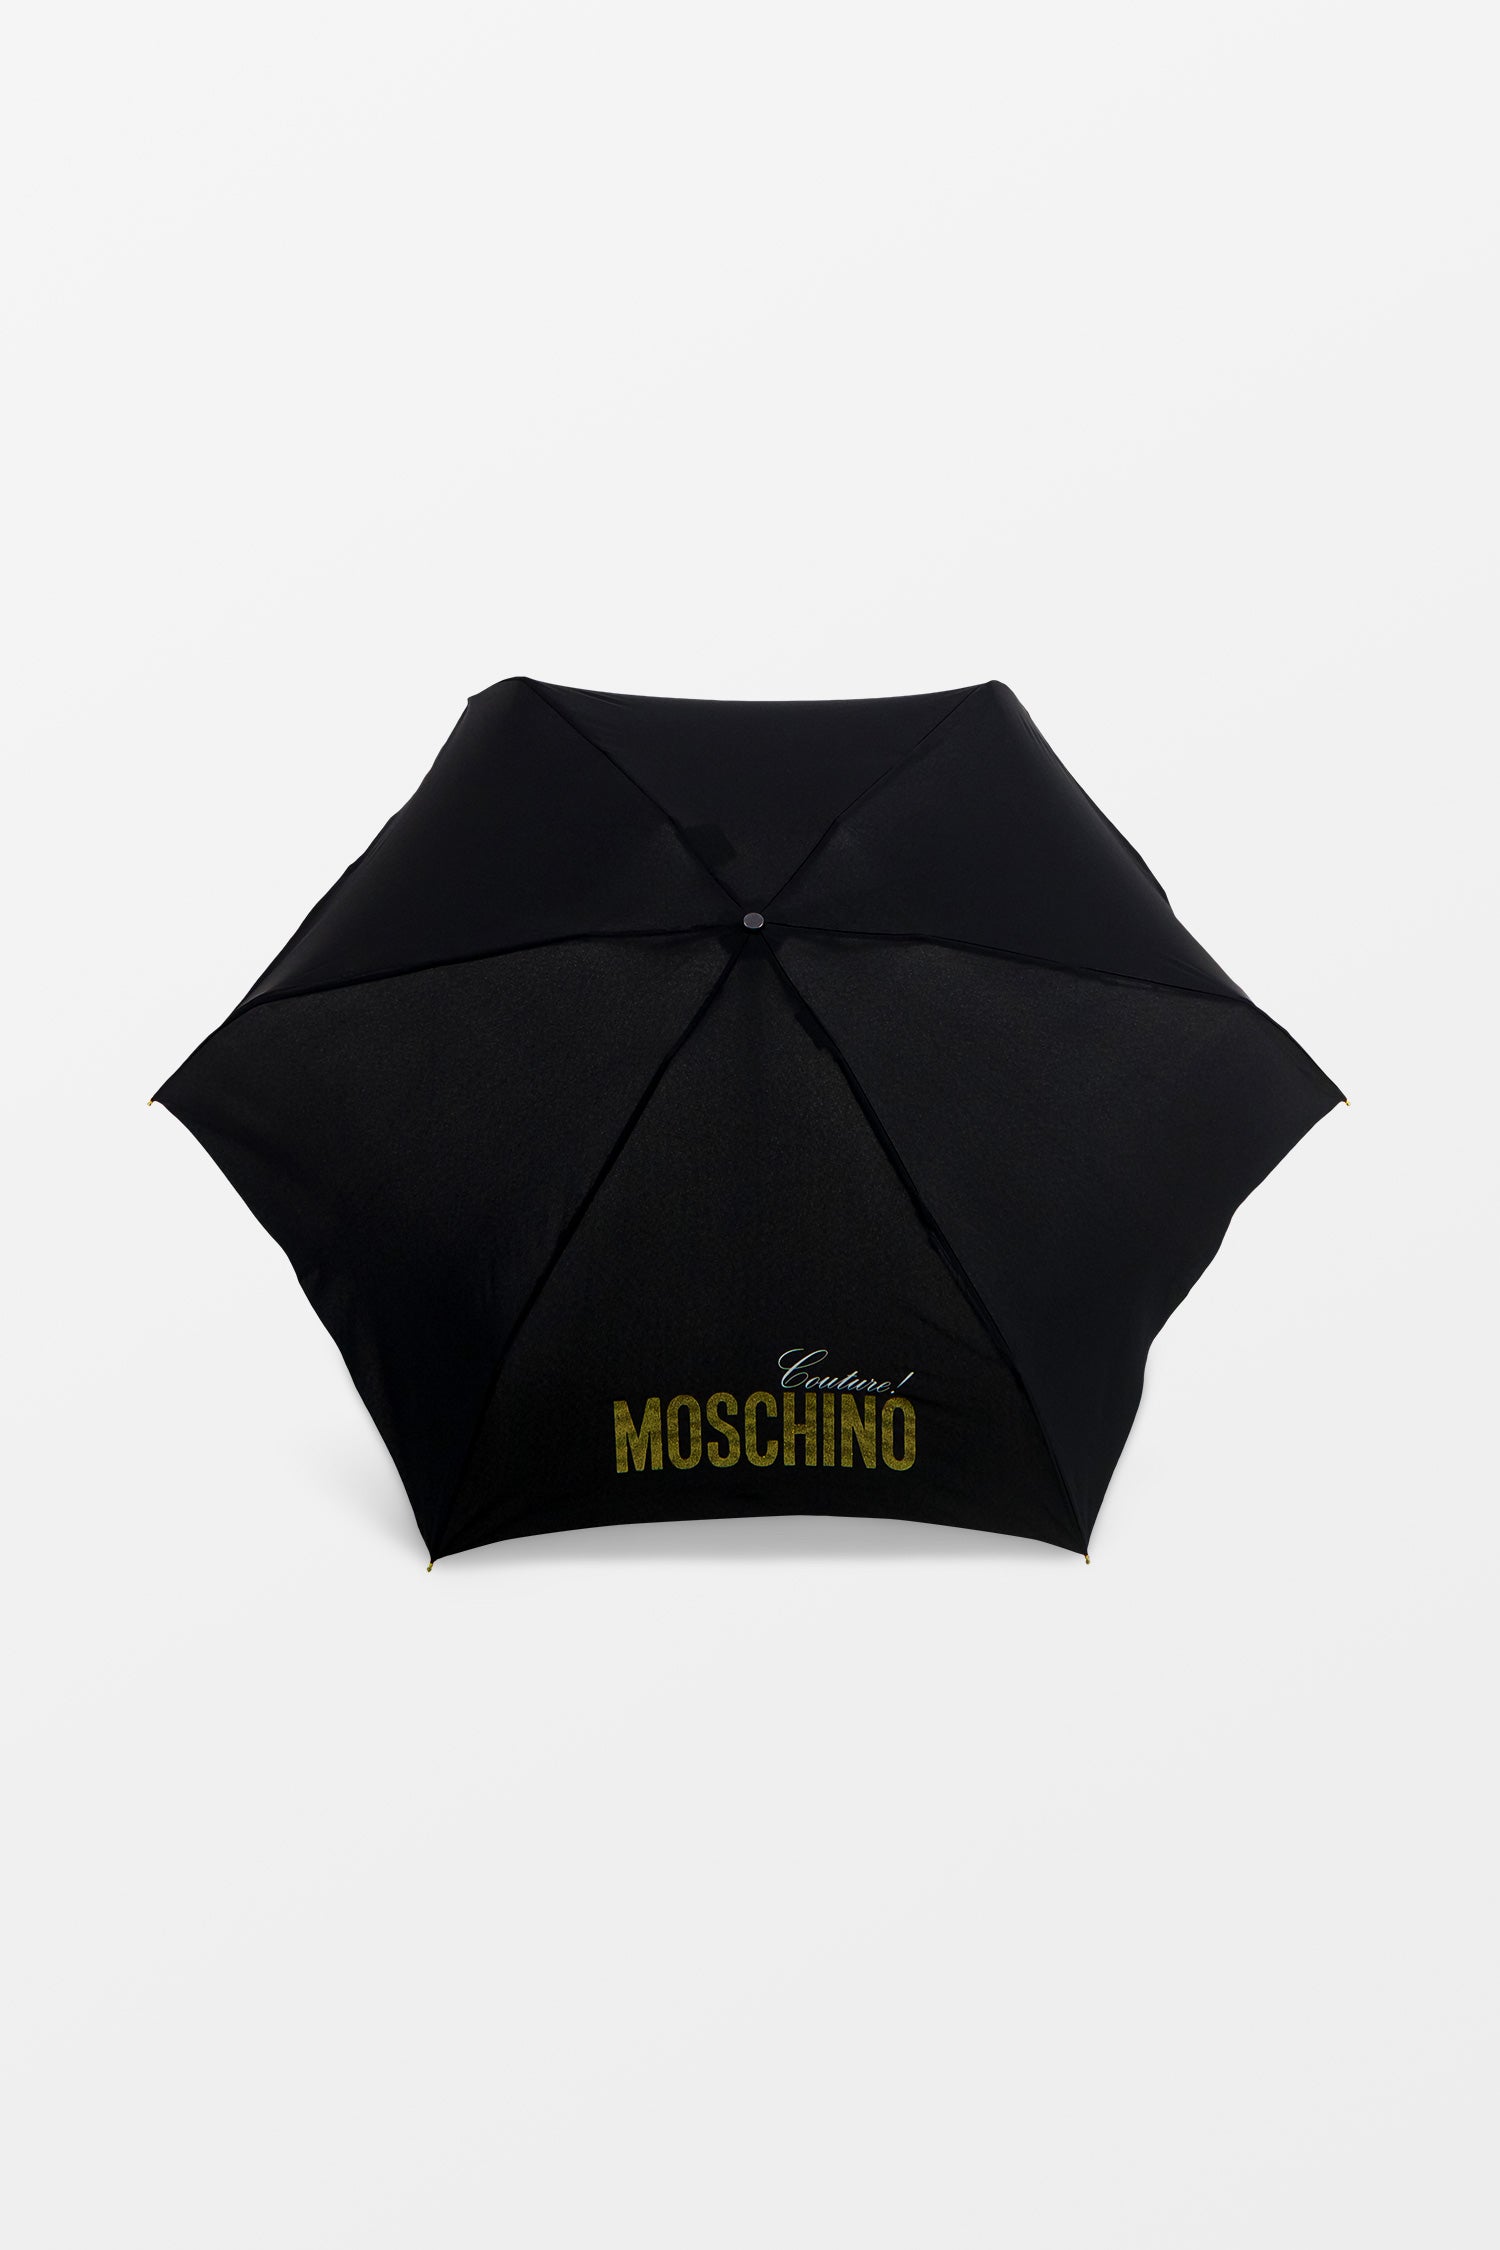 Moschino Gold Supermini Umbrella